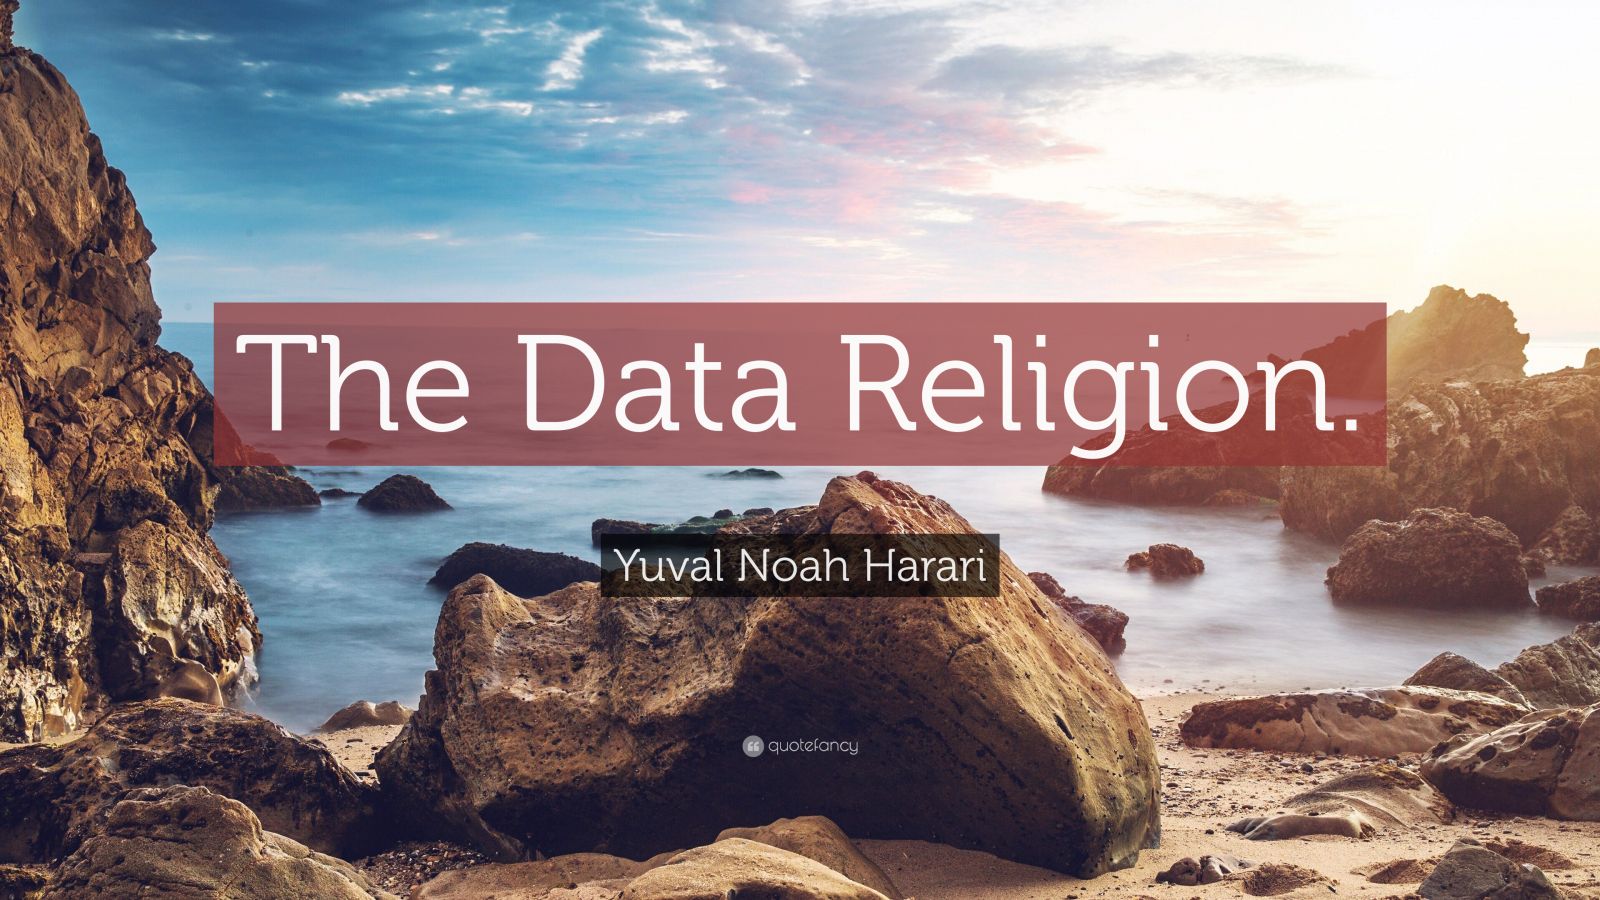 Yuval Noah Harari Quote: “The Data Religion.”